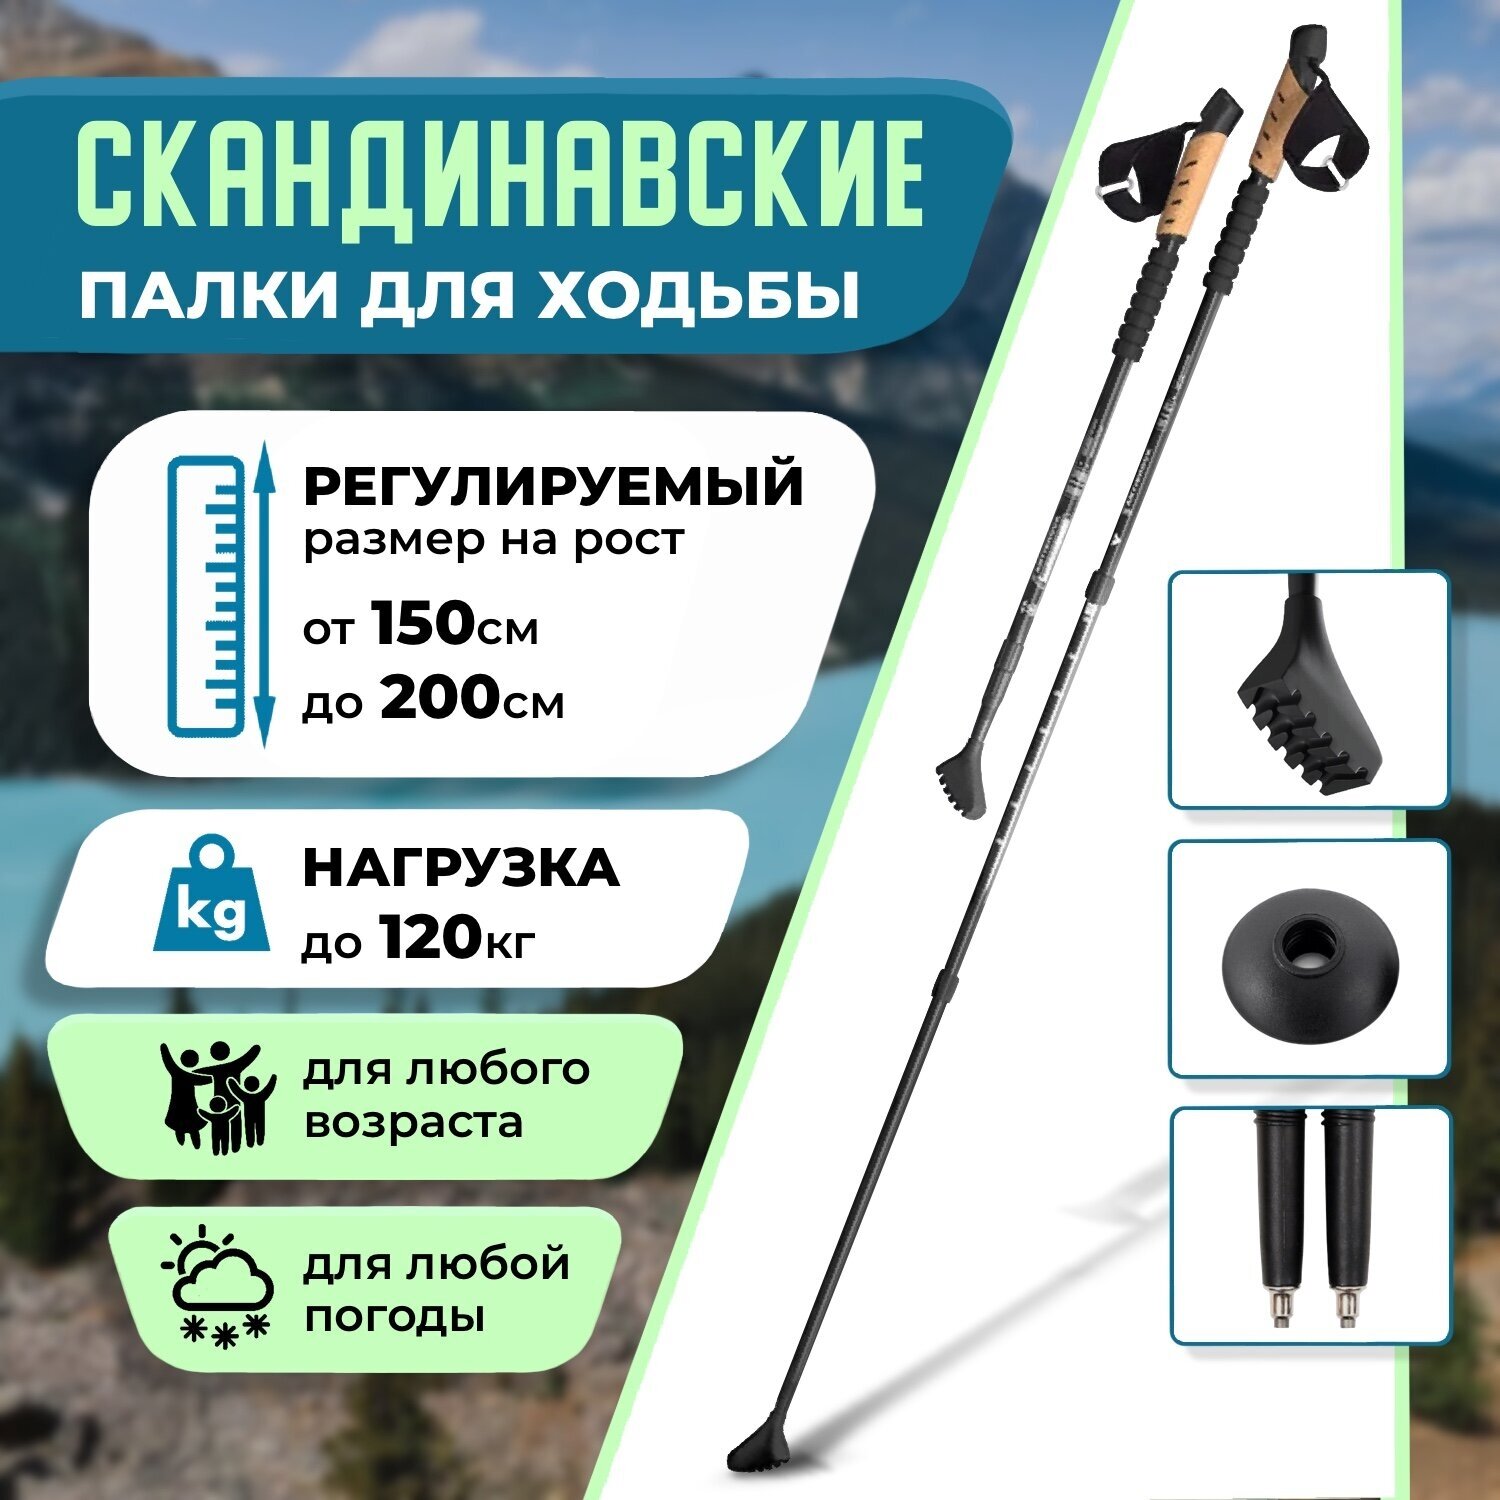 Скандинавские палки для ходьбы Chit.Store телескопические складные и компактные товары для похода и активного отдыха зимой спортивный инвентарь для природы туристические аксессуары